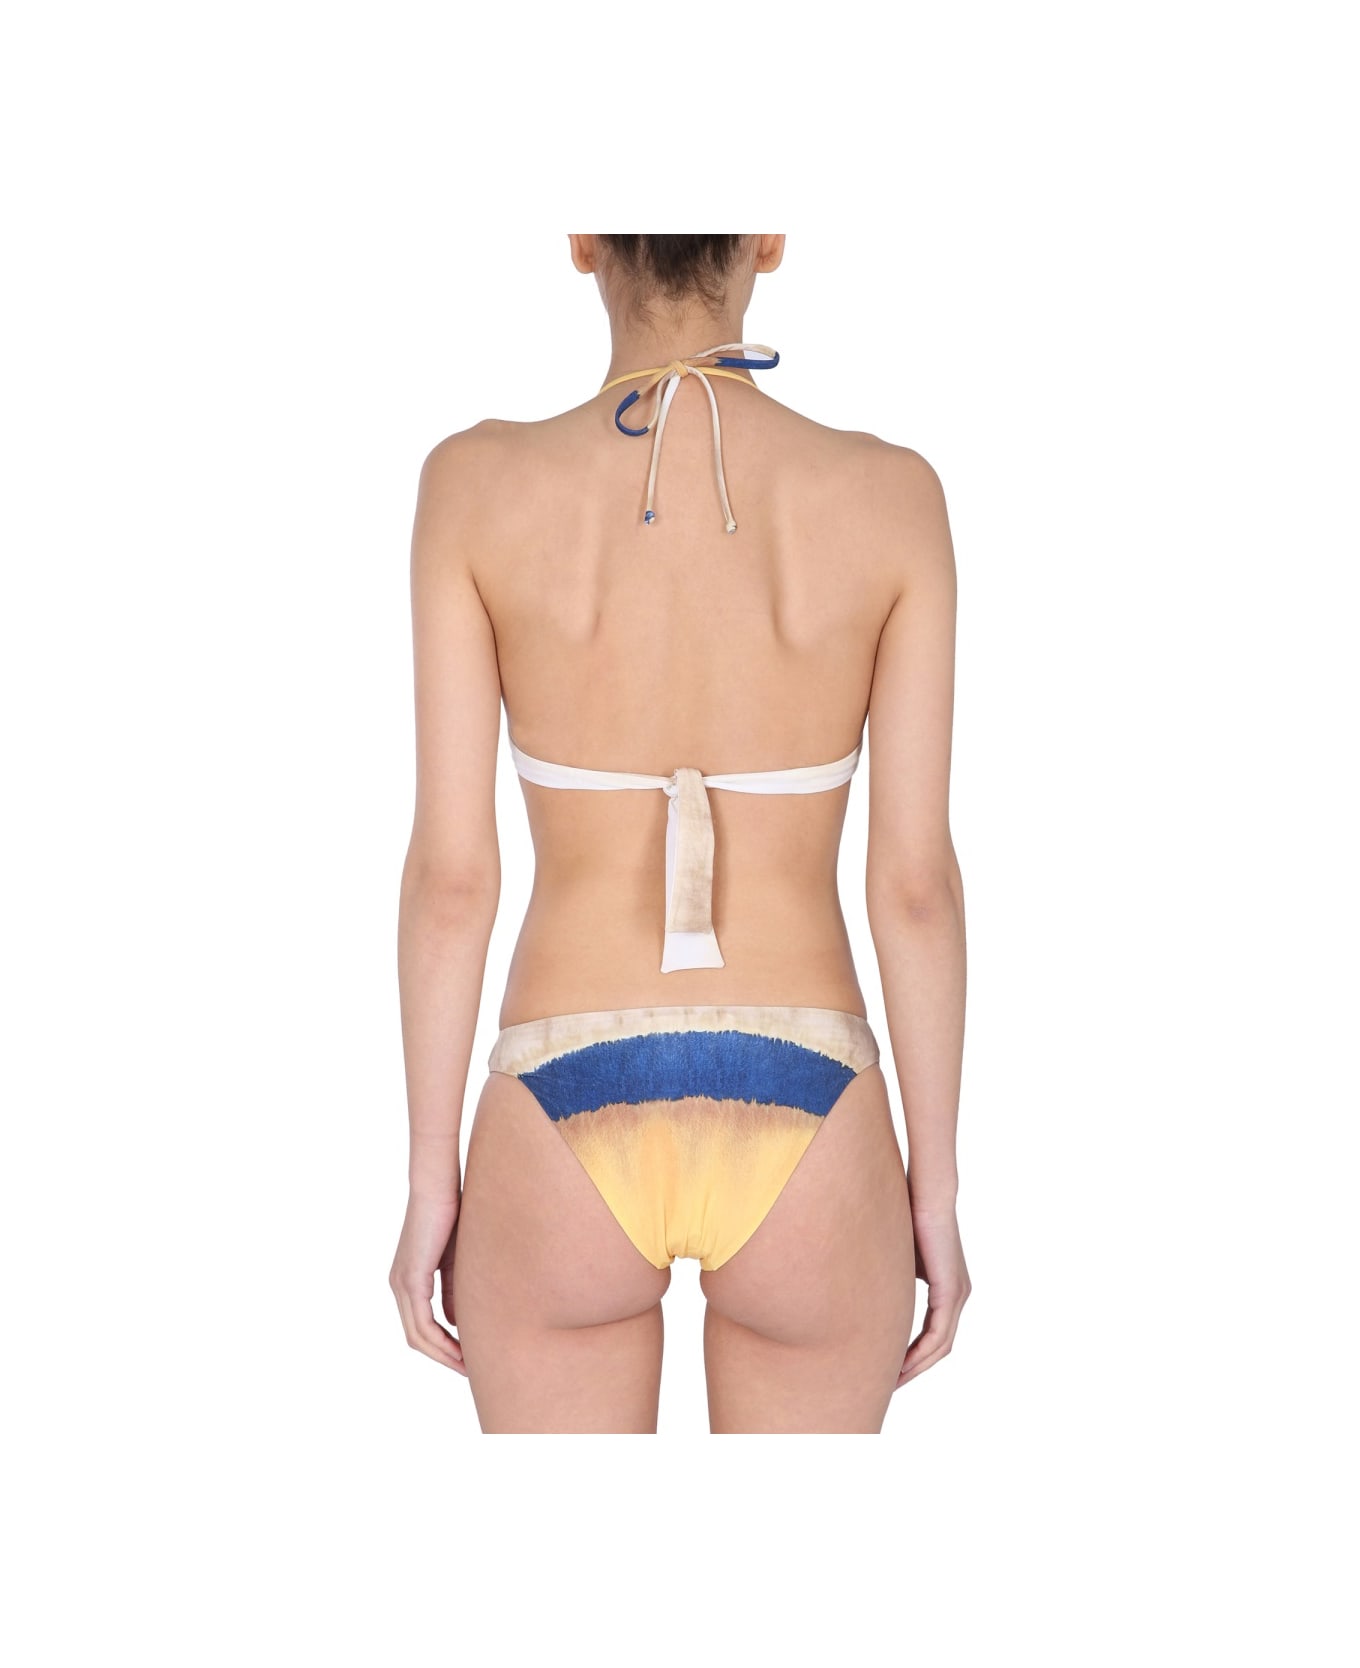 Alberta Ferretti Bikini Set With Tie Dye Print - MULTICOLOUR 水着